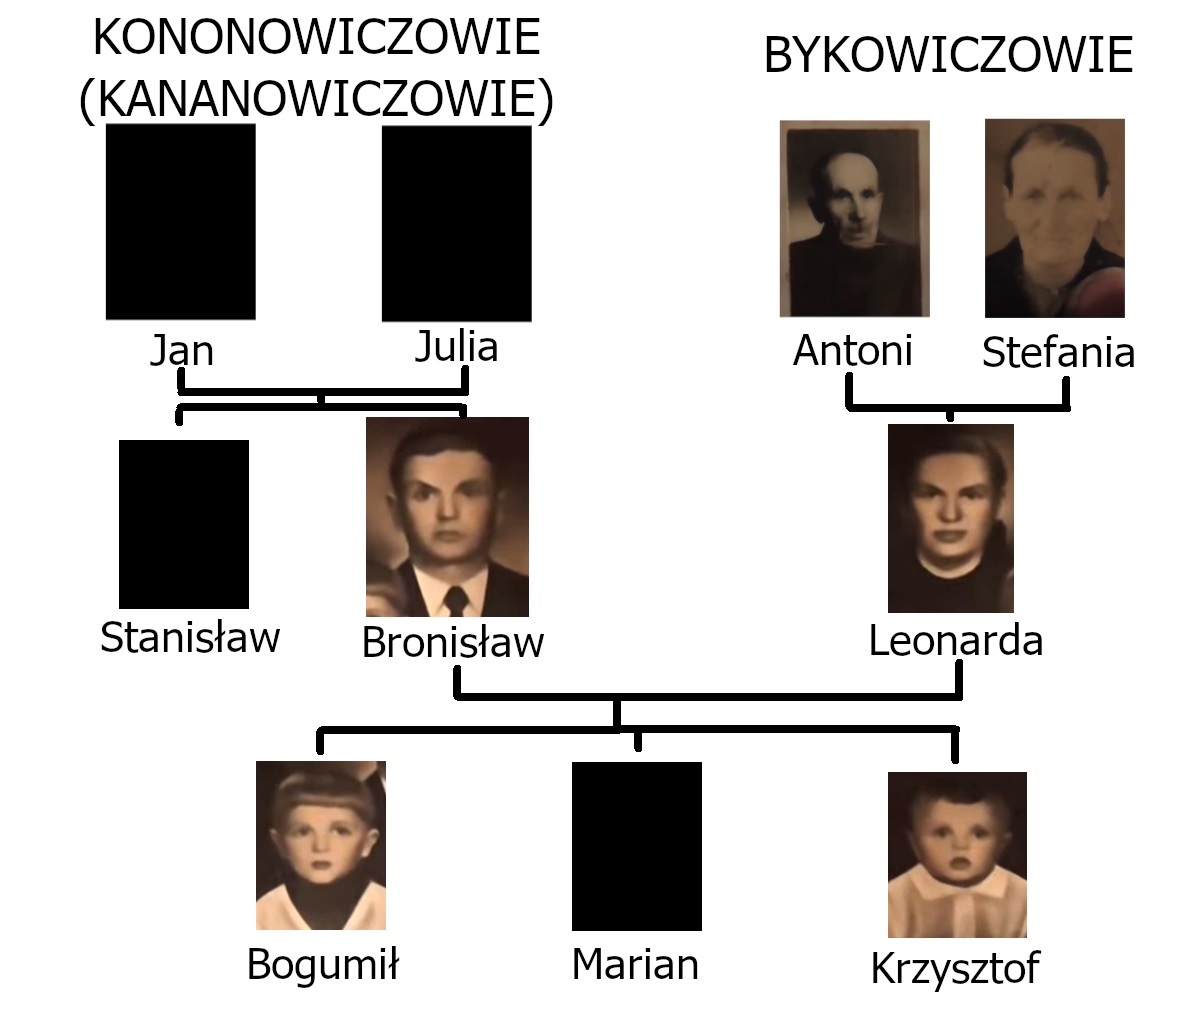 Drzewo genealogiczne Kononowiczów.jpg